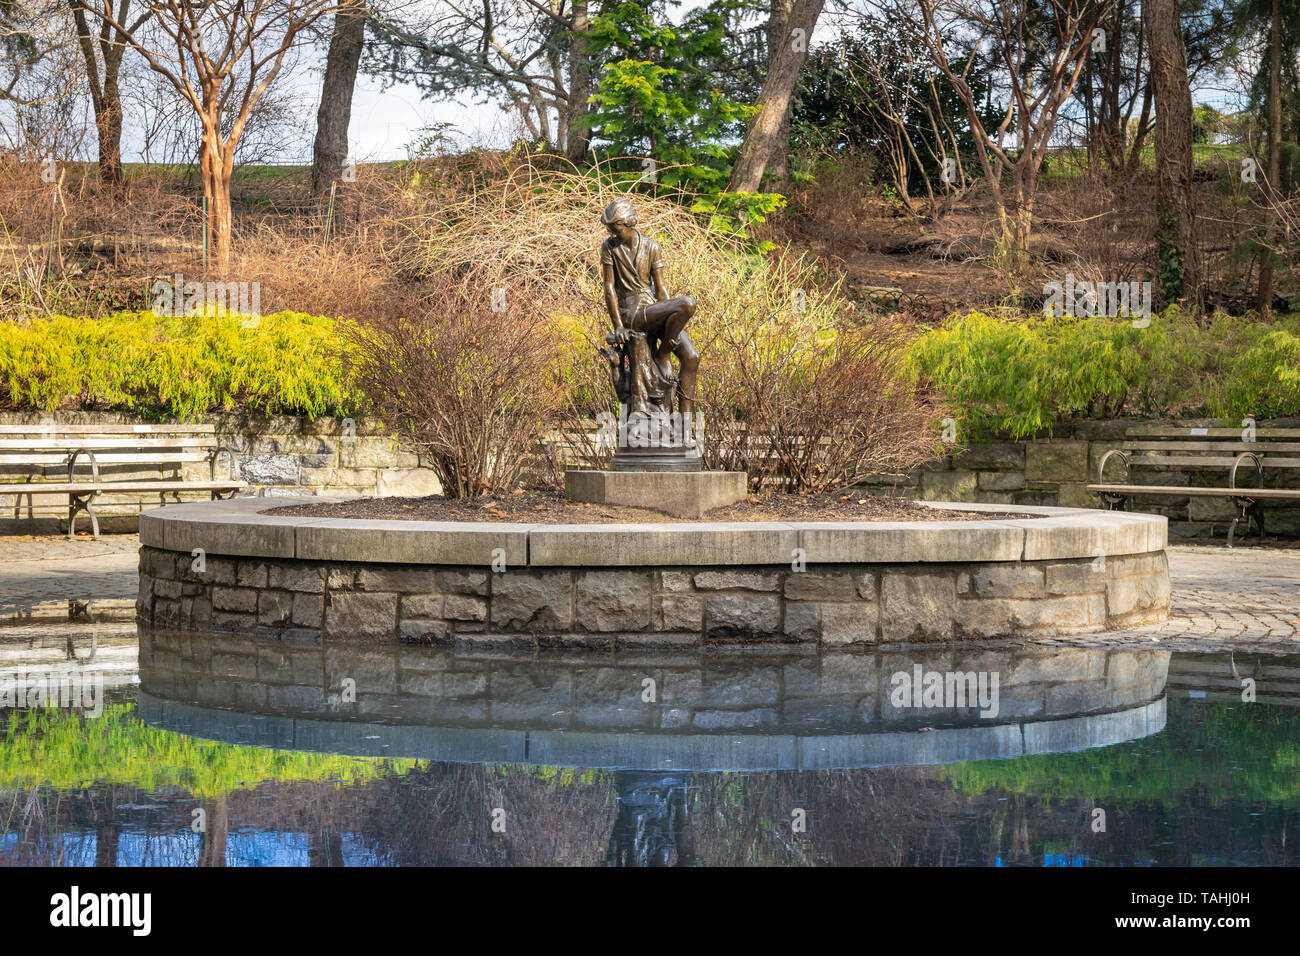 Statue de bronze qui célèbre la jeunesse, Peter Pan, de Carl Schurz Park à New York, NY, USA Banque D'Images